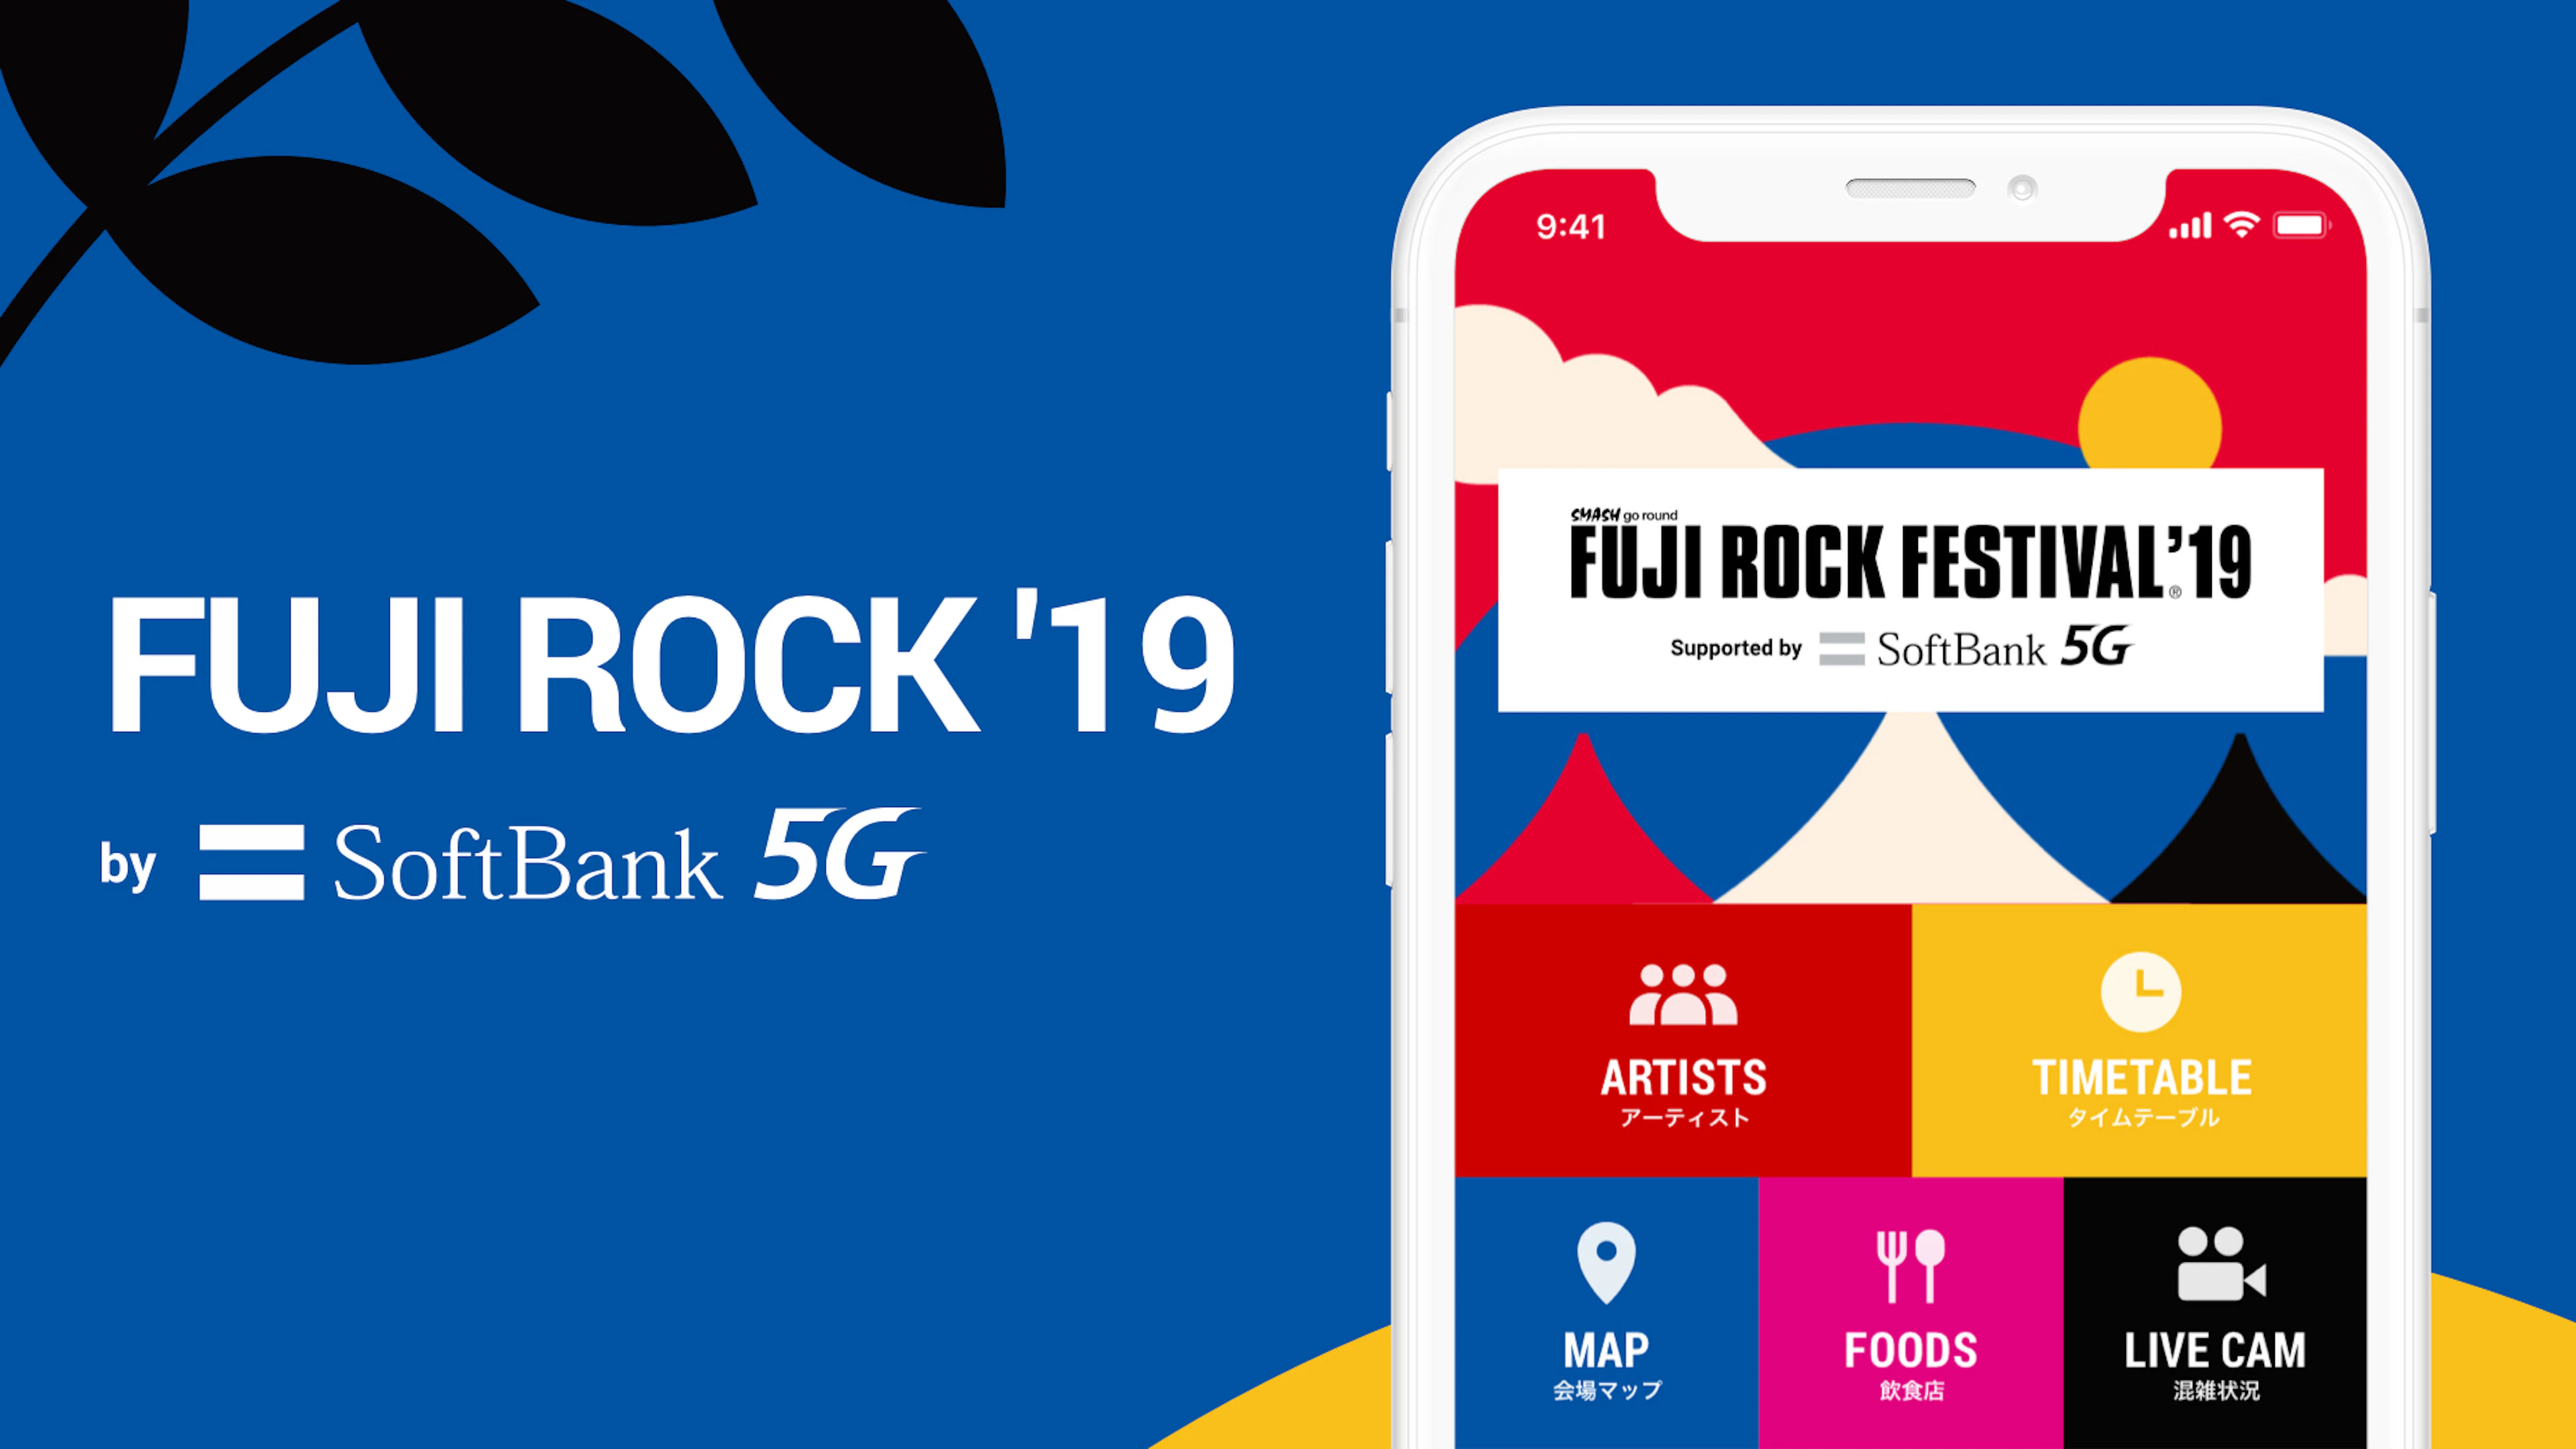 FUJI ROCK ’19 by SoftBank 5G